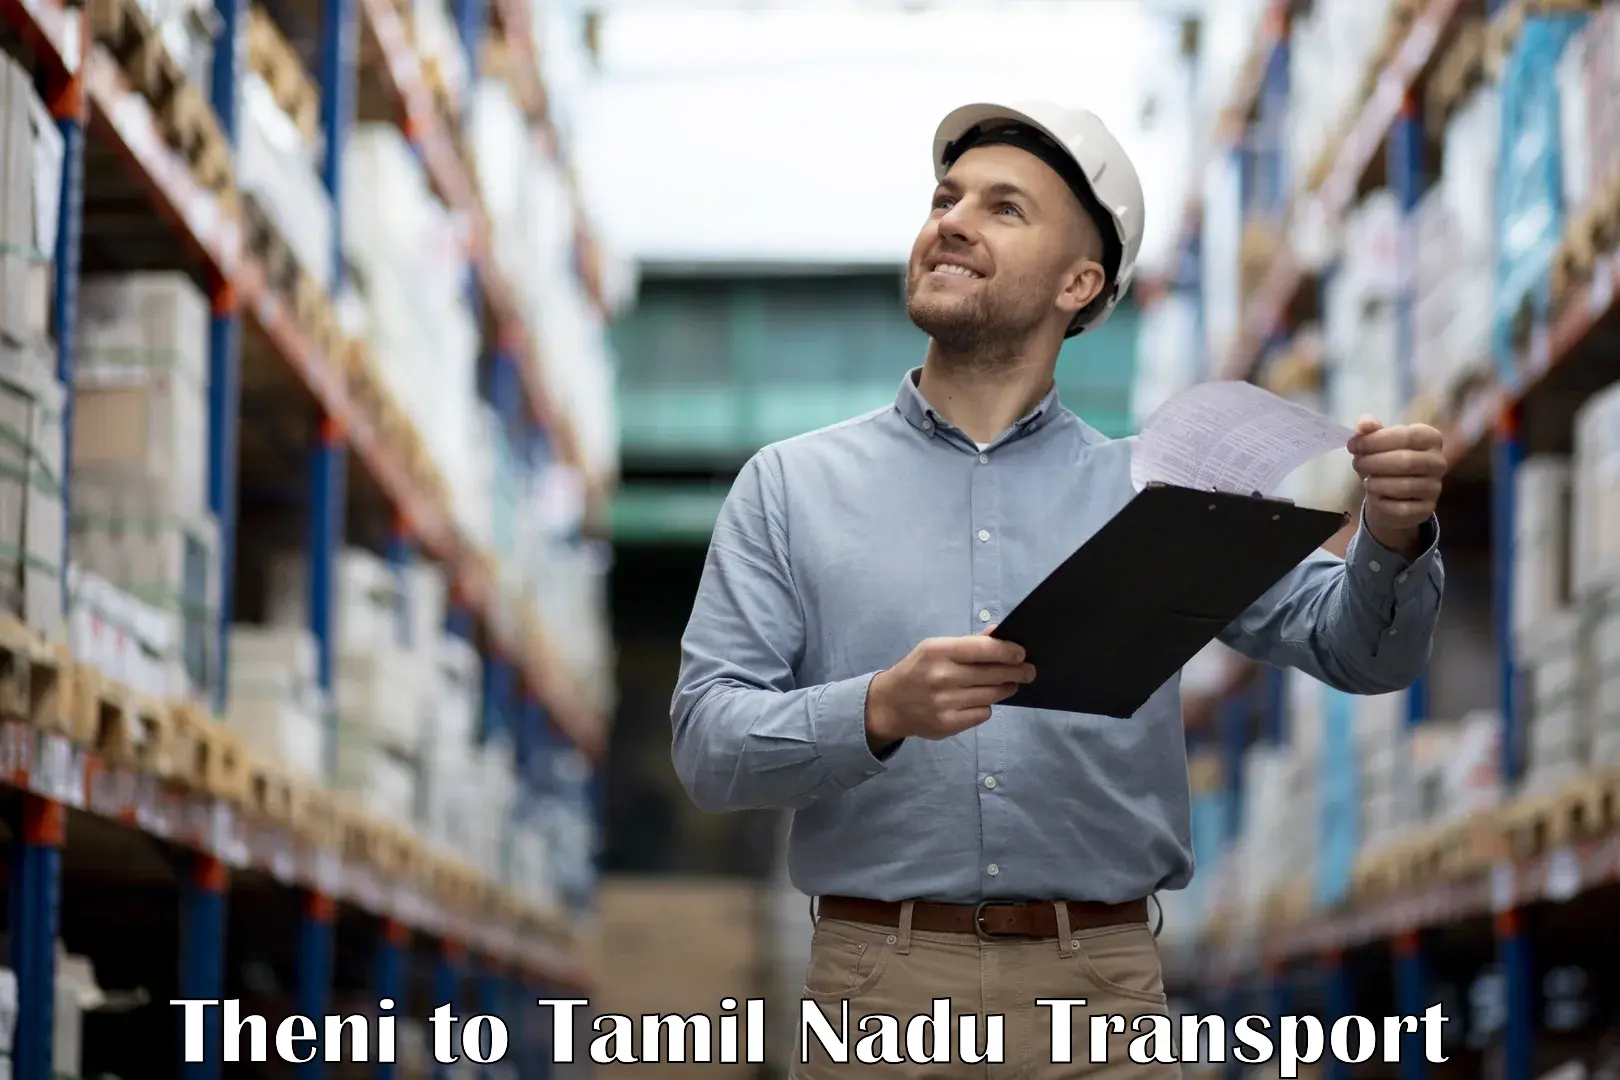 Delivery service Theni to Madurai